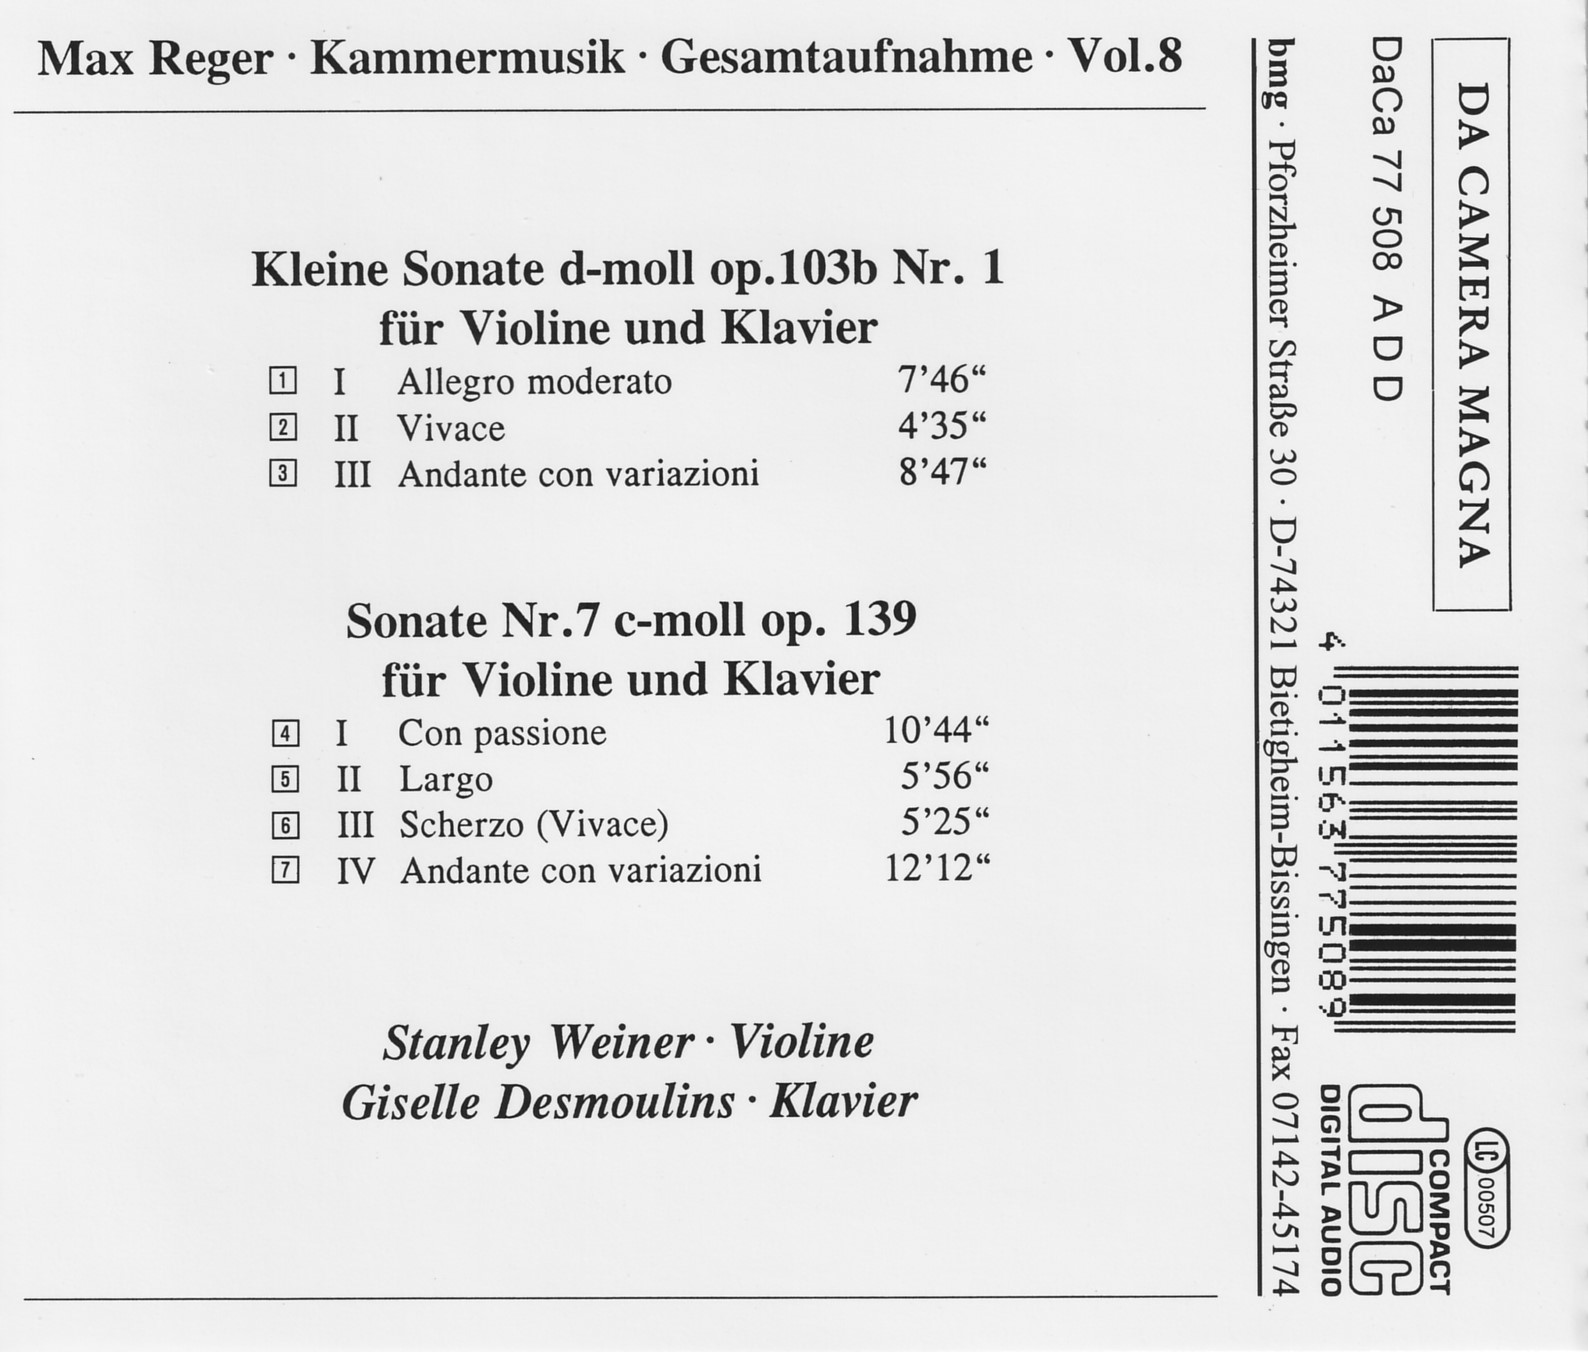 Max Reger - Kammermusik komplett Vol. 8